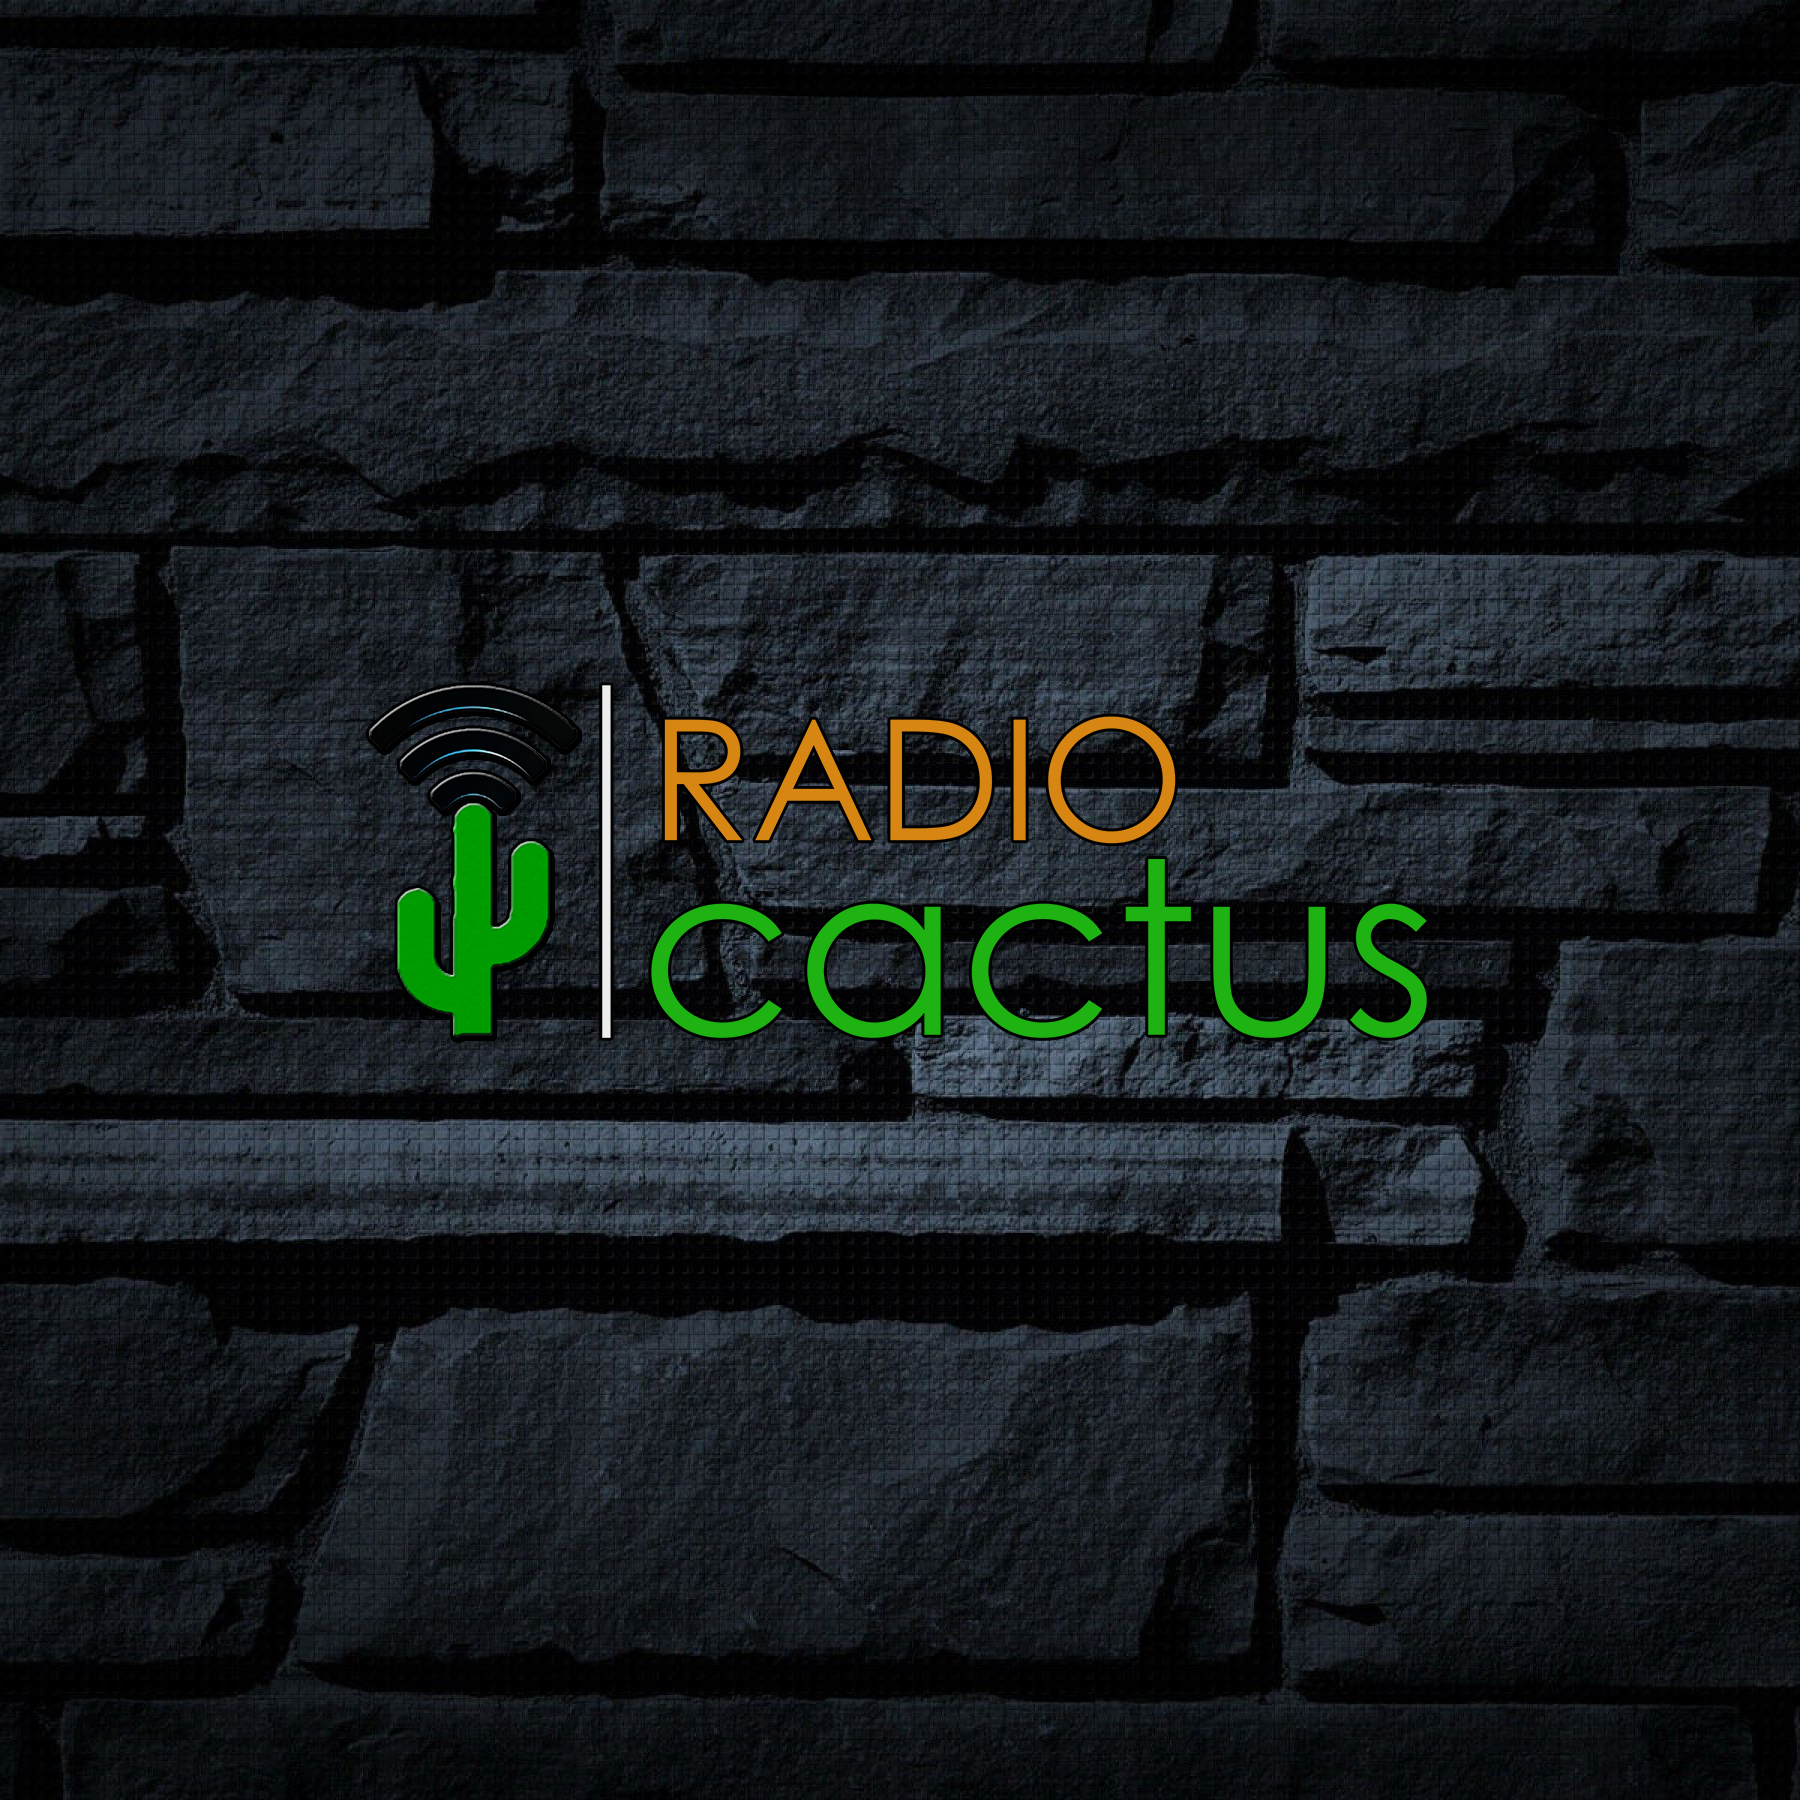 Radio Cactus